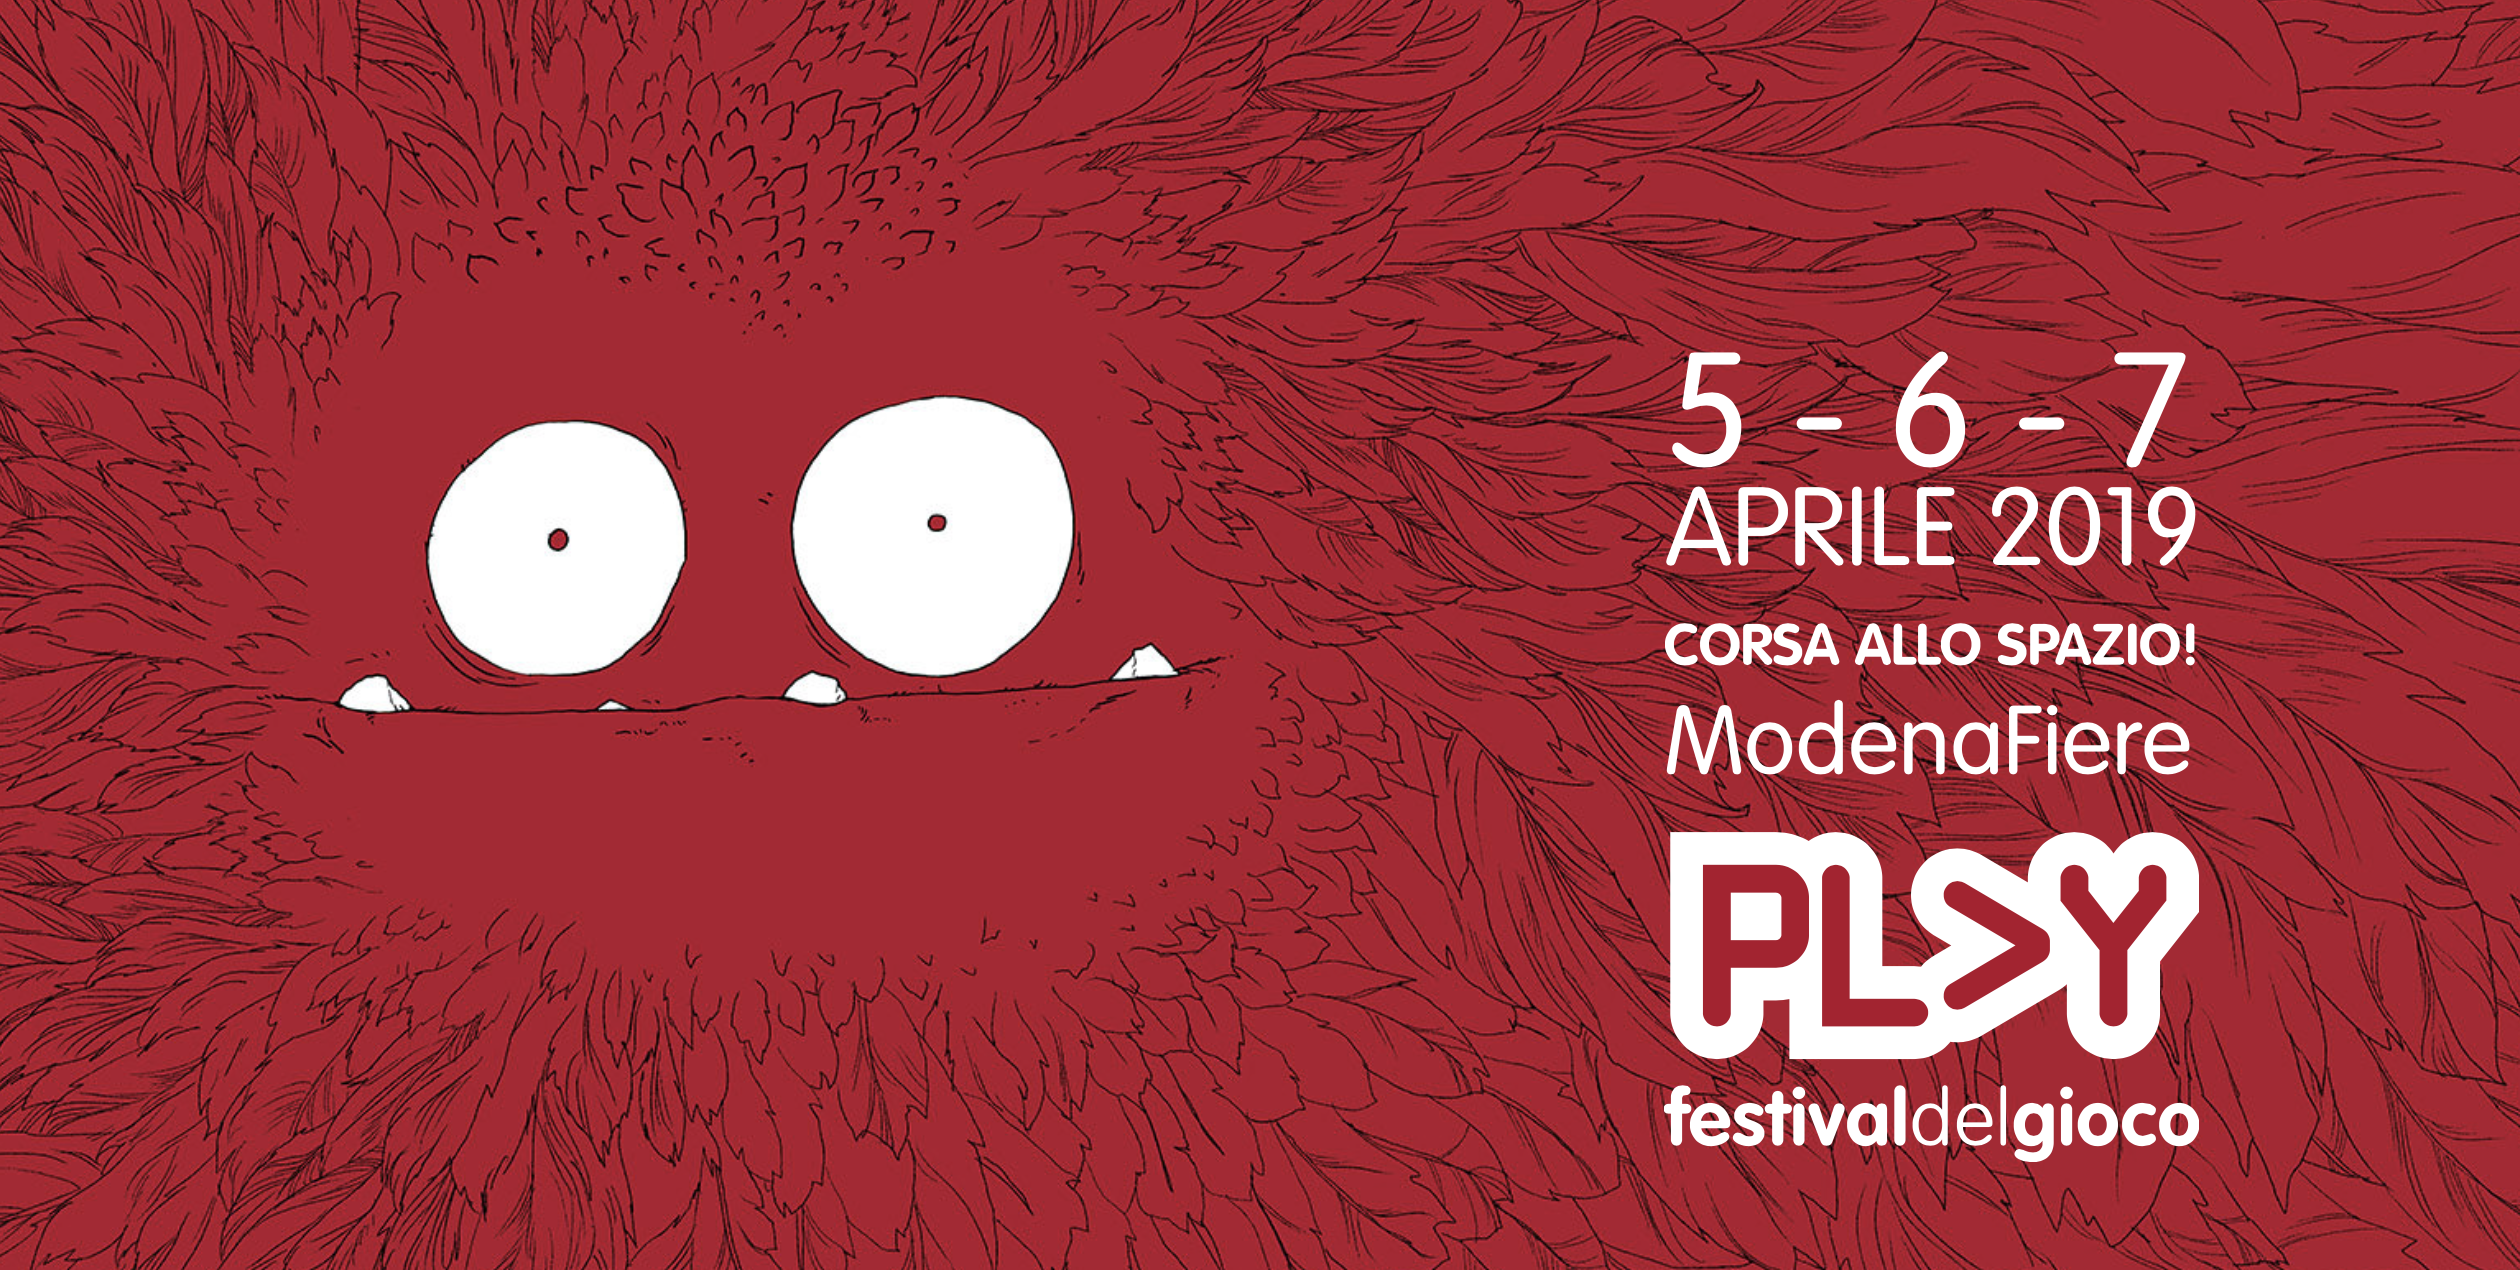 Play Festival del Gioco di Modena